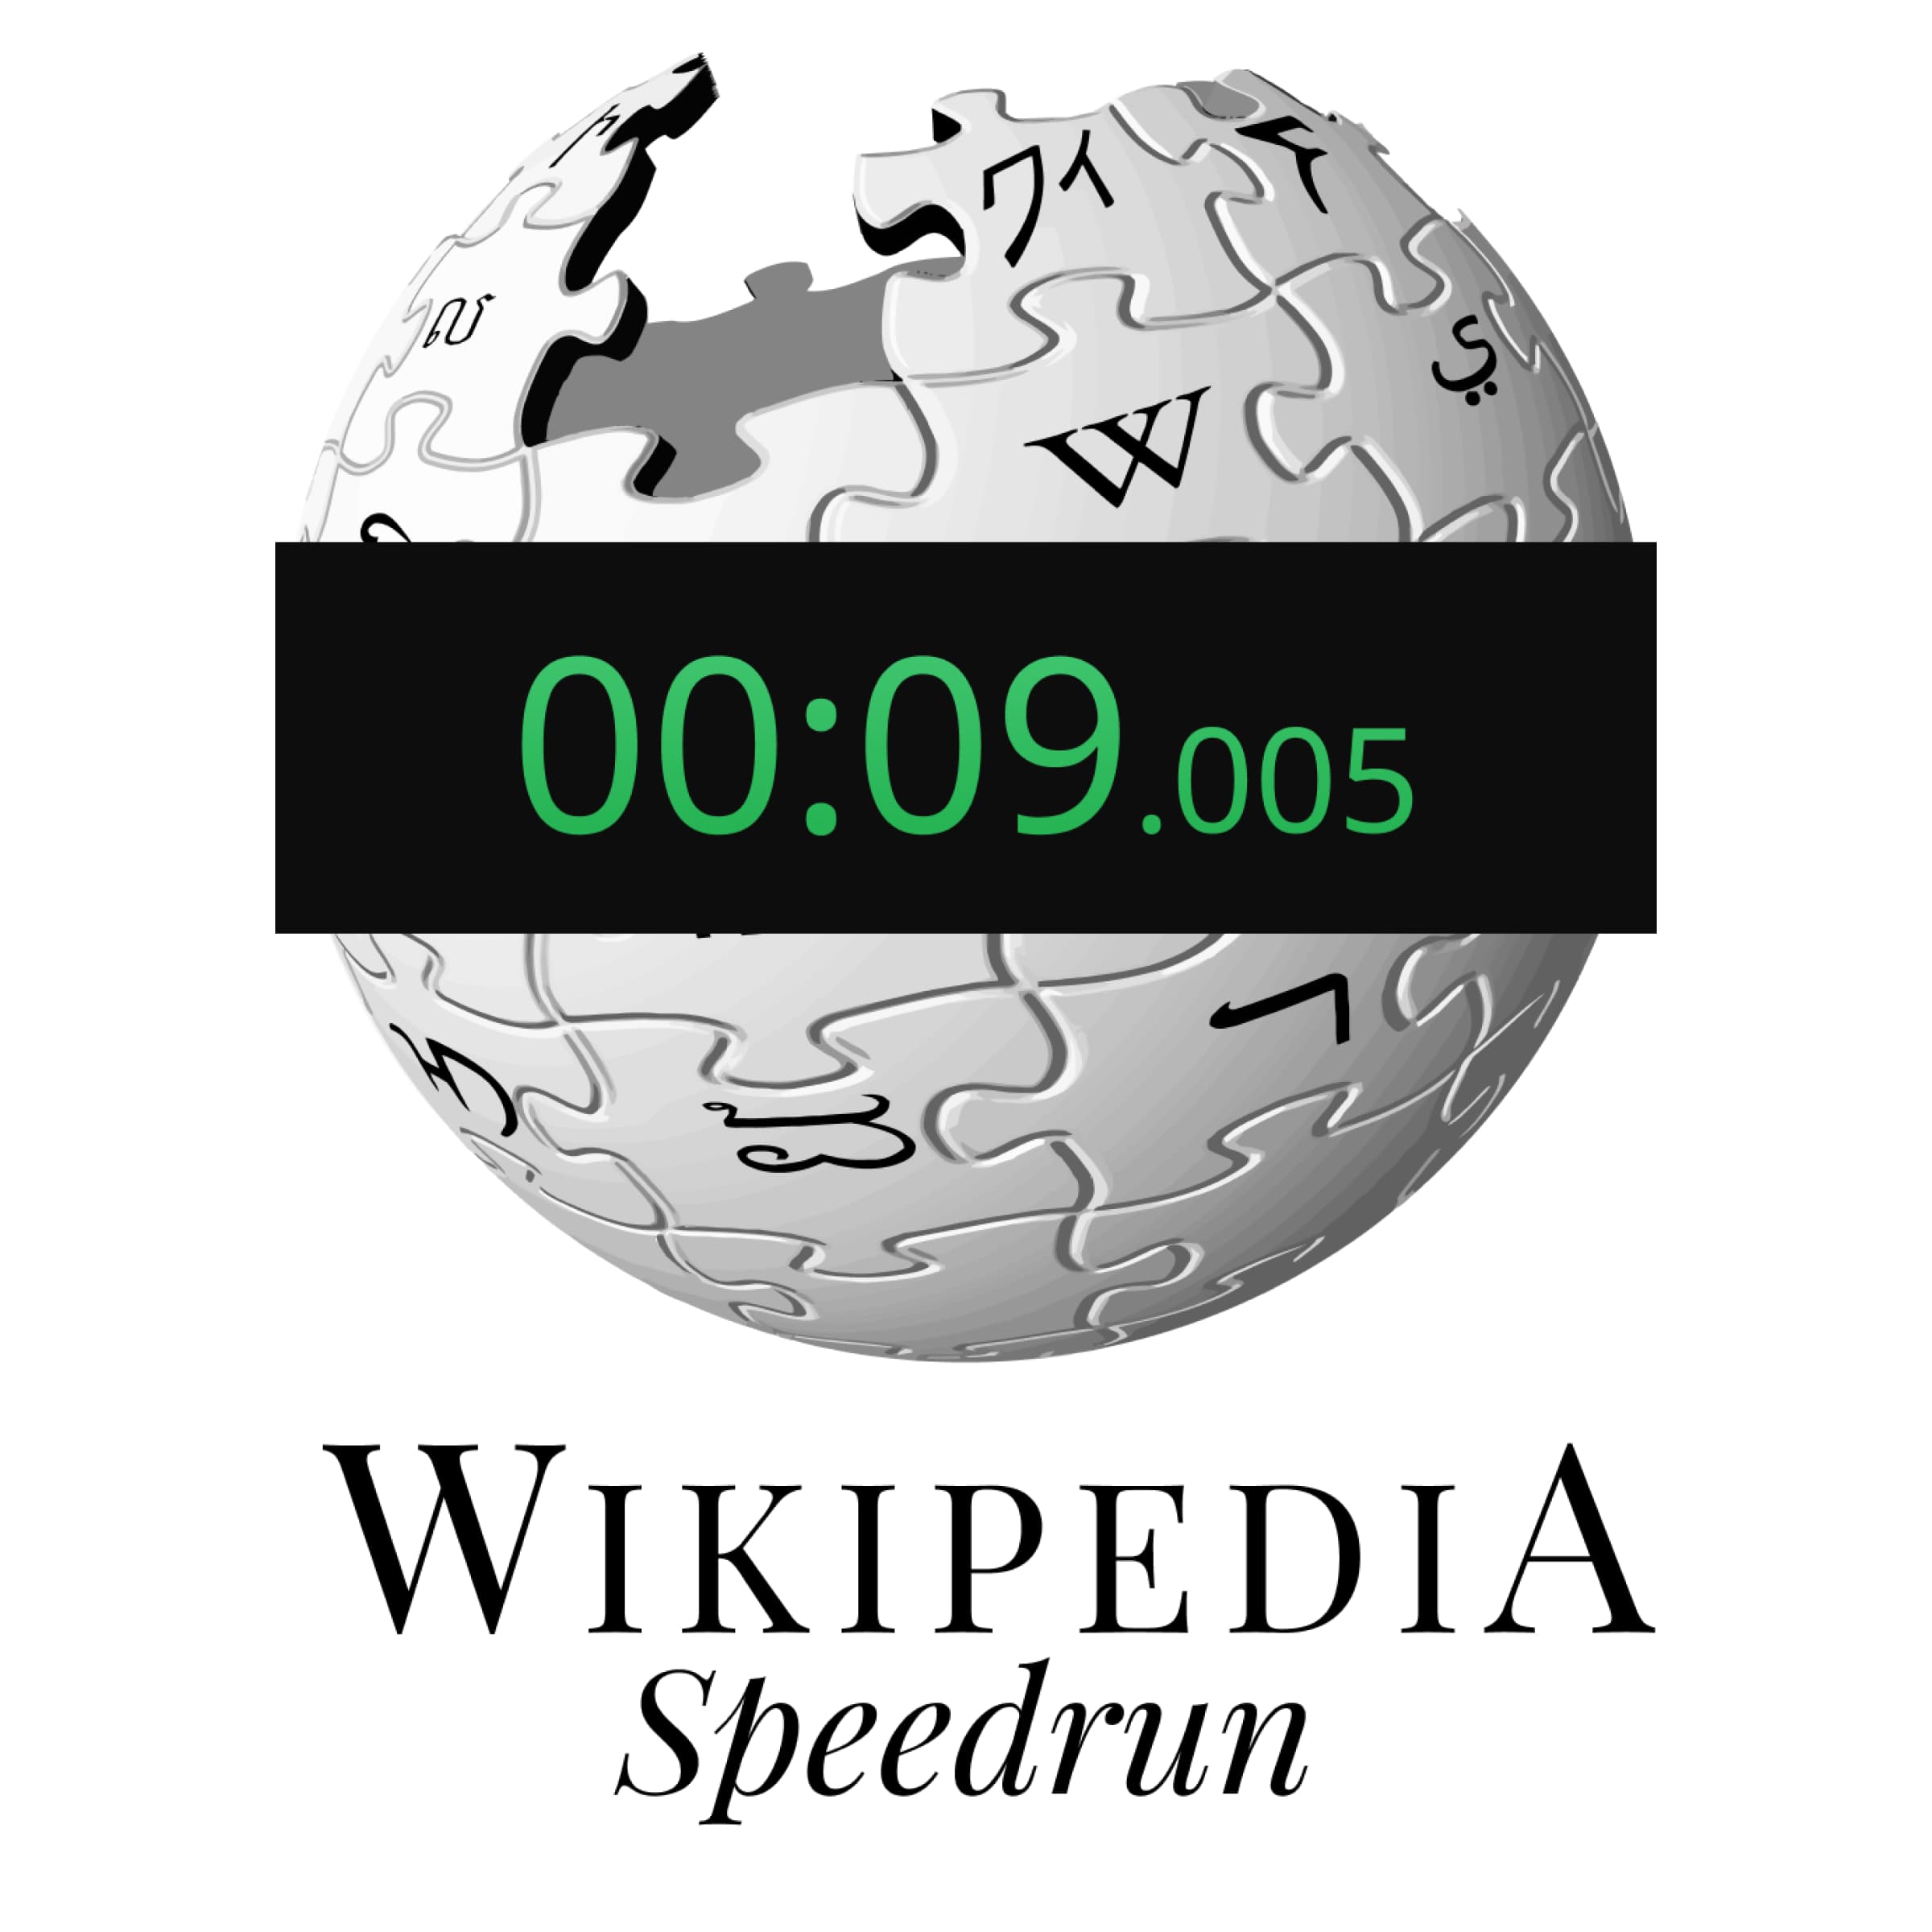 Speedrunning - Wikipedia